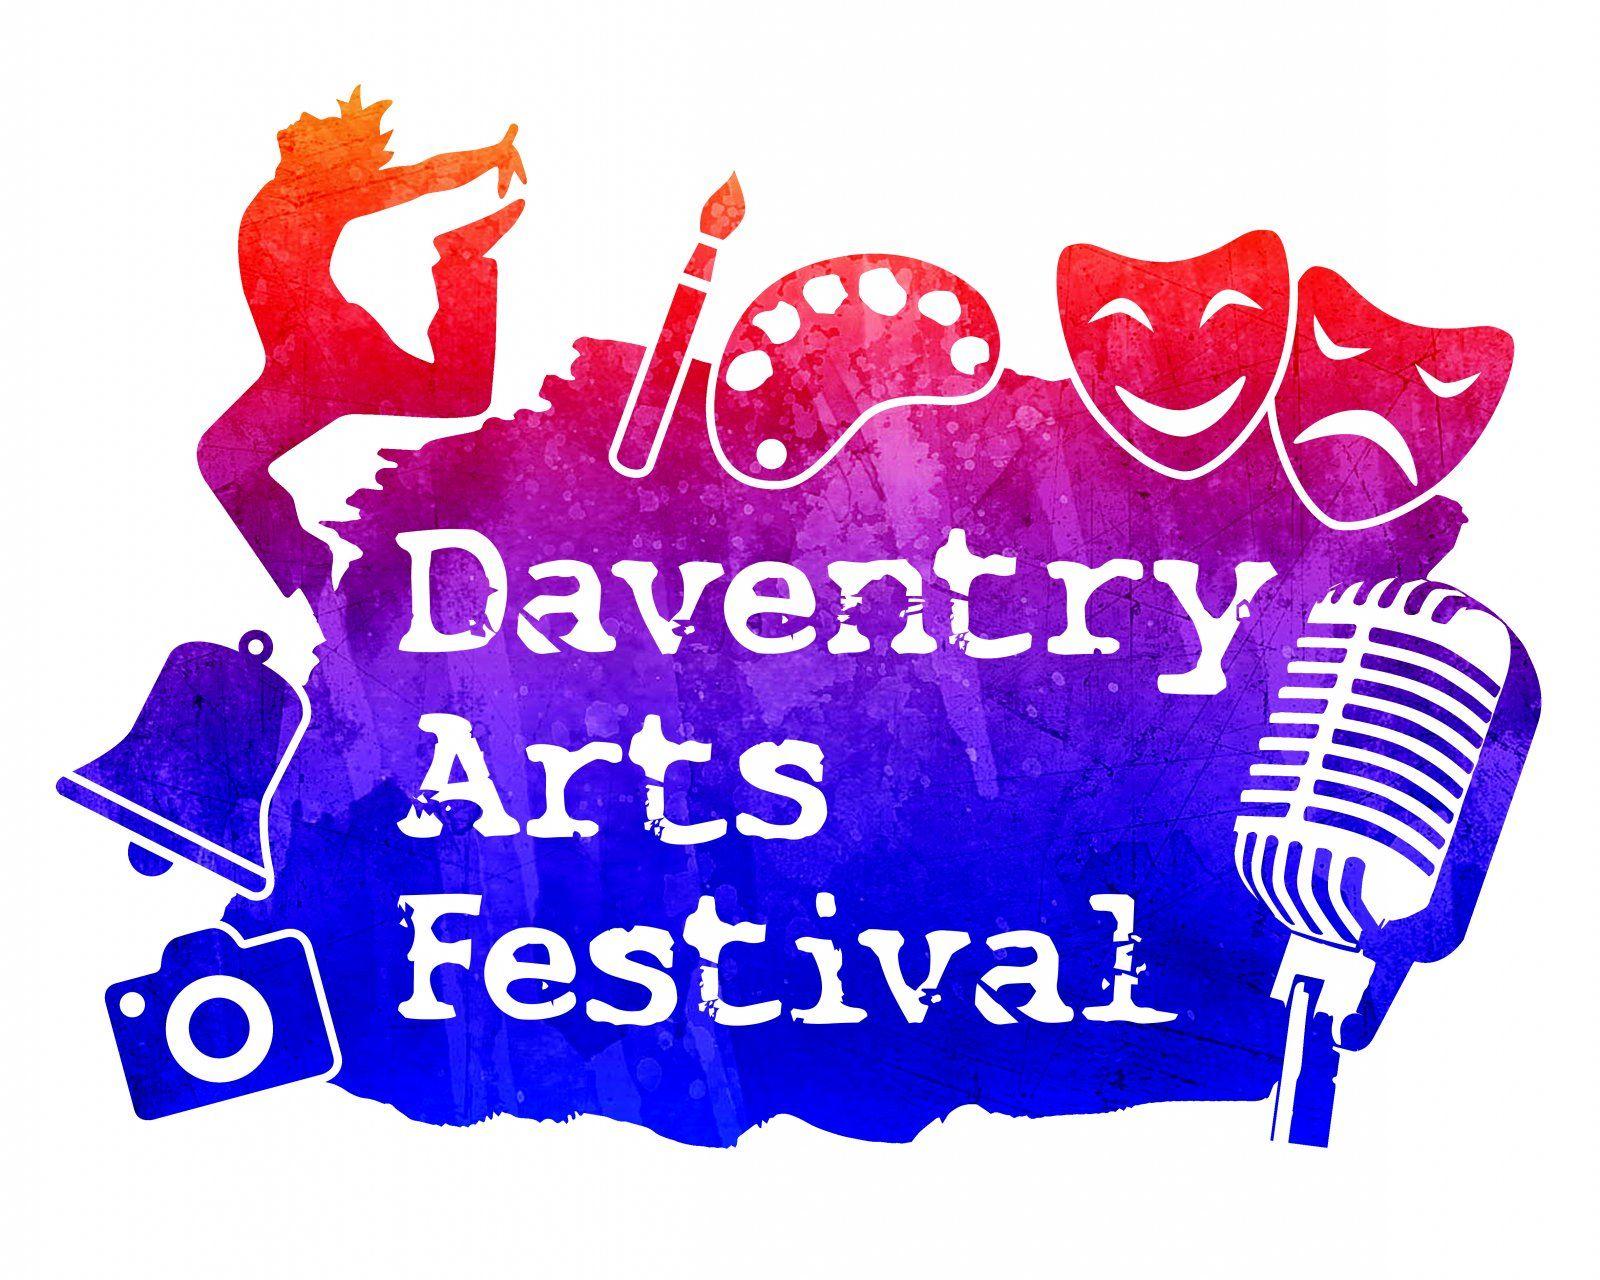 Festival Logo - Gallery Arts Festival logo. Daventry Town Council